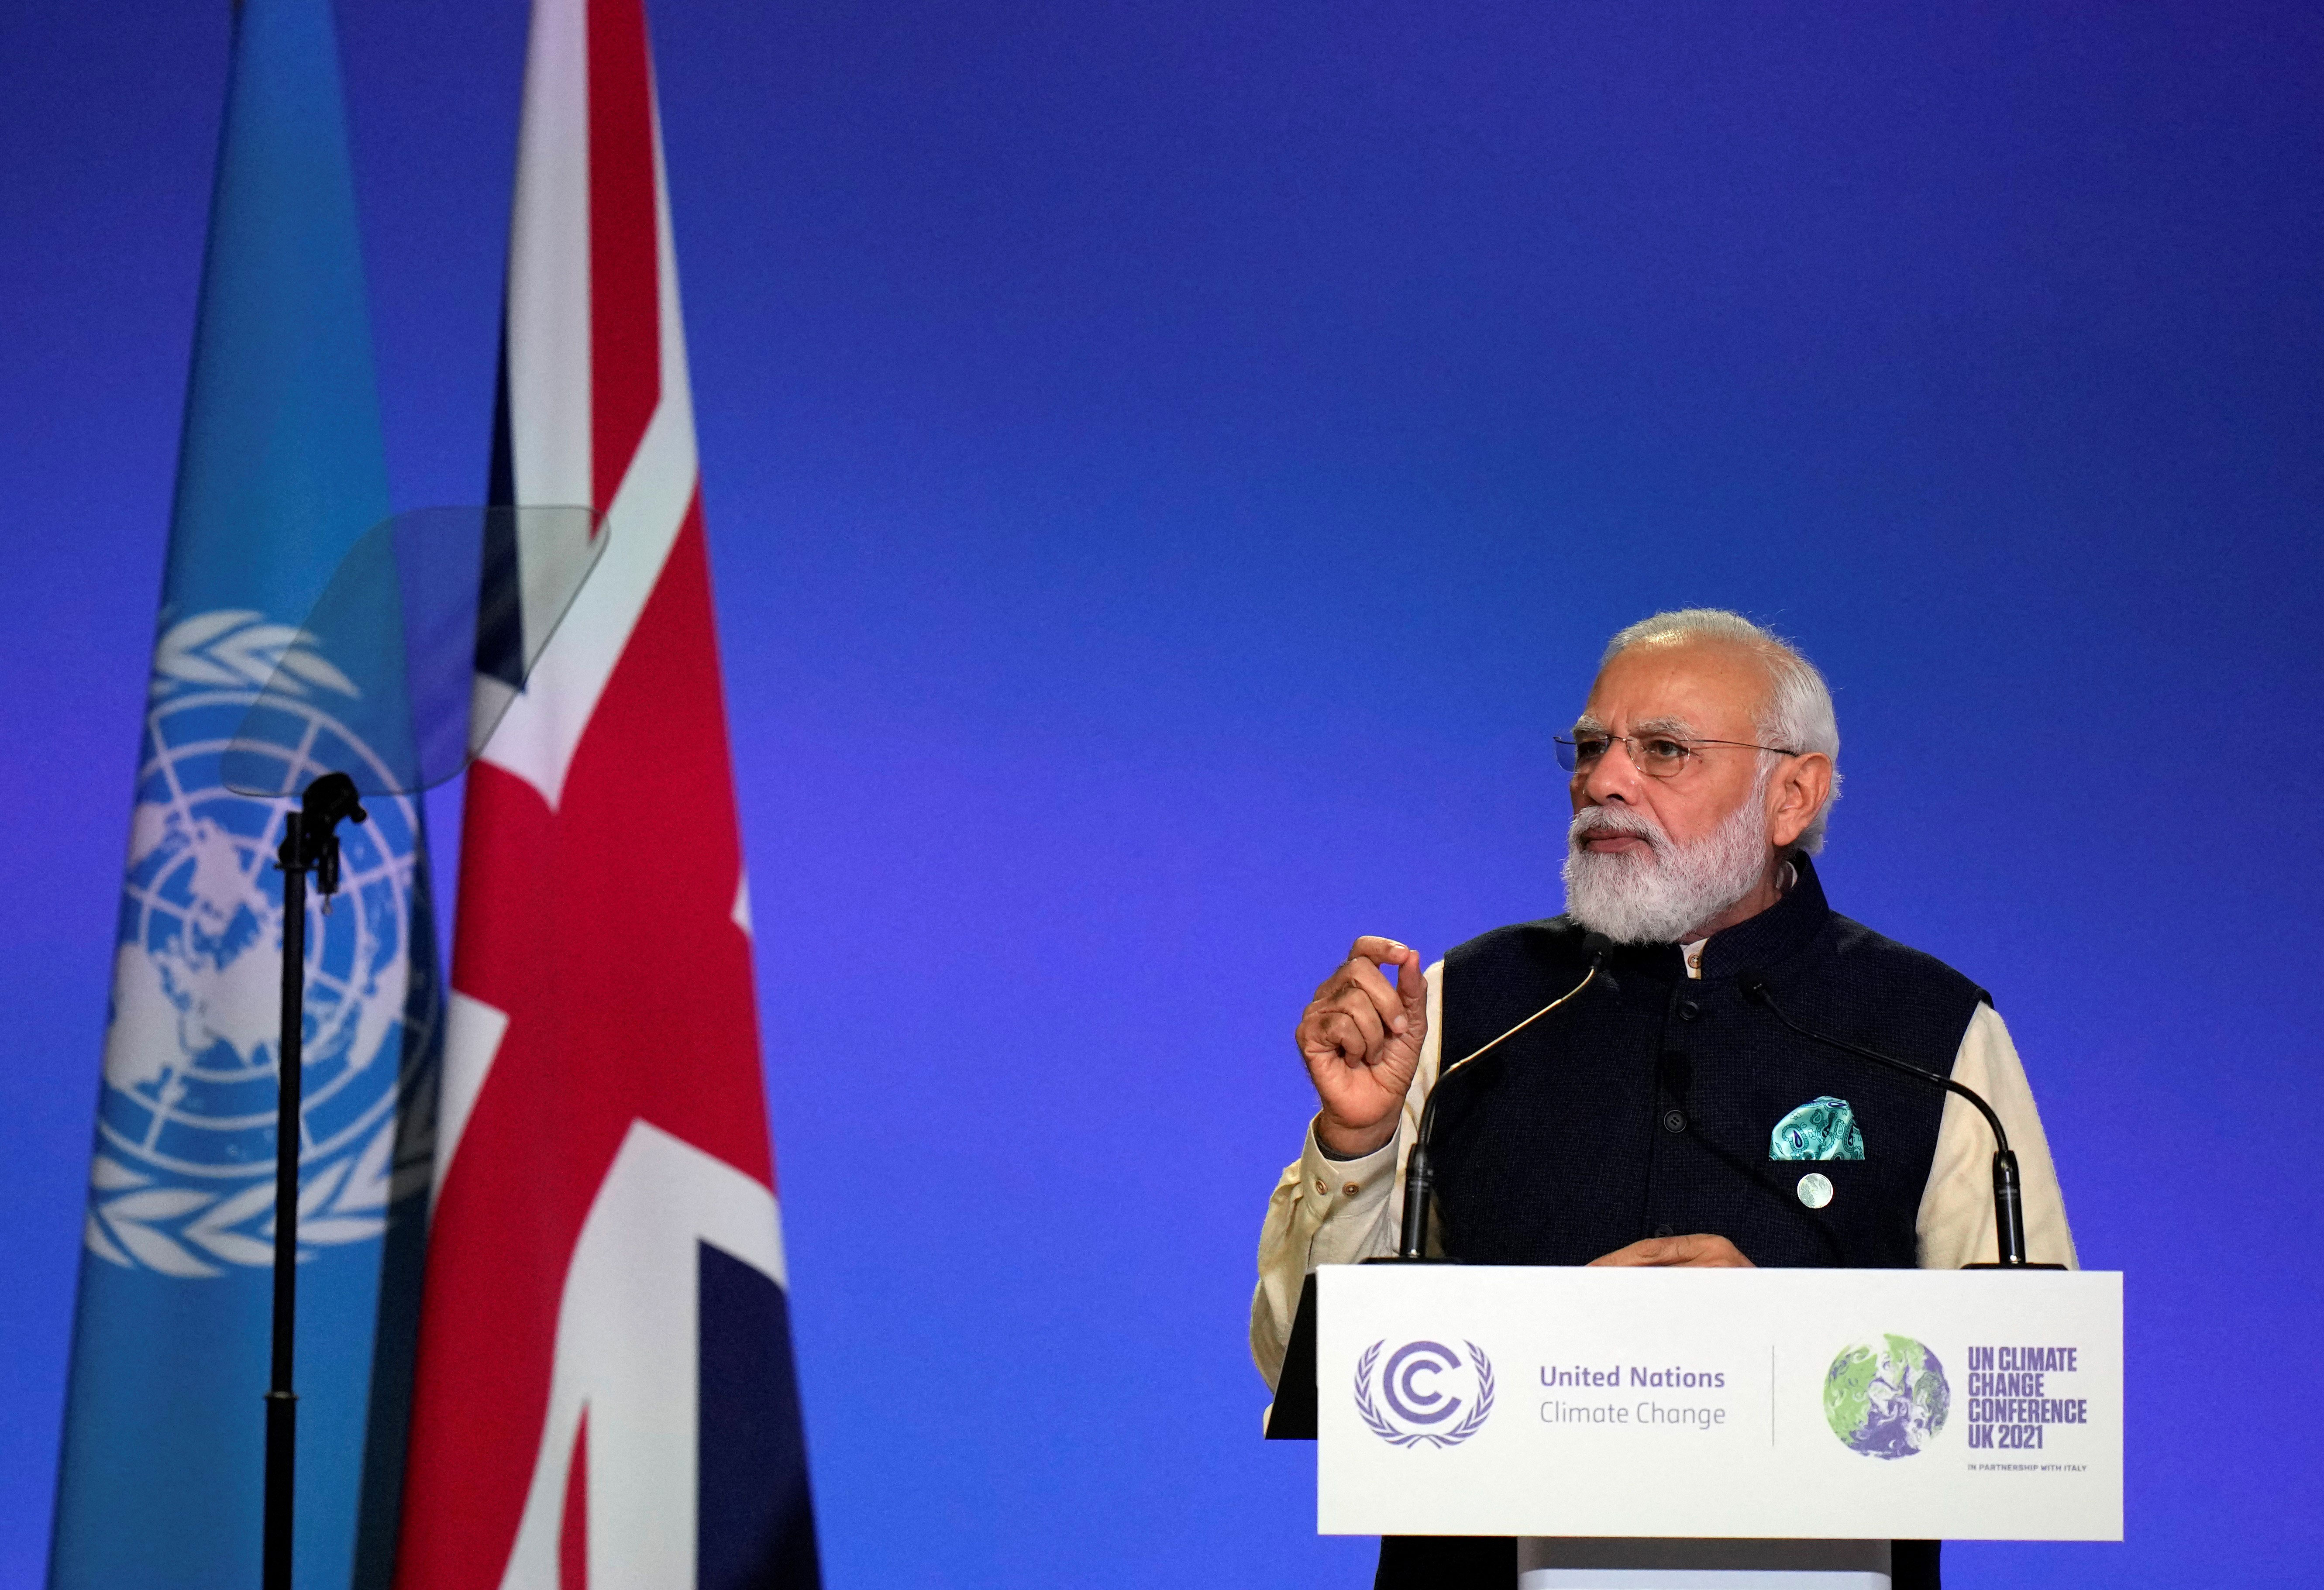 India's Prime Minister Narendra Modi speaks at COP26 in Glasgow, Scotland, on November 1.